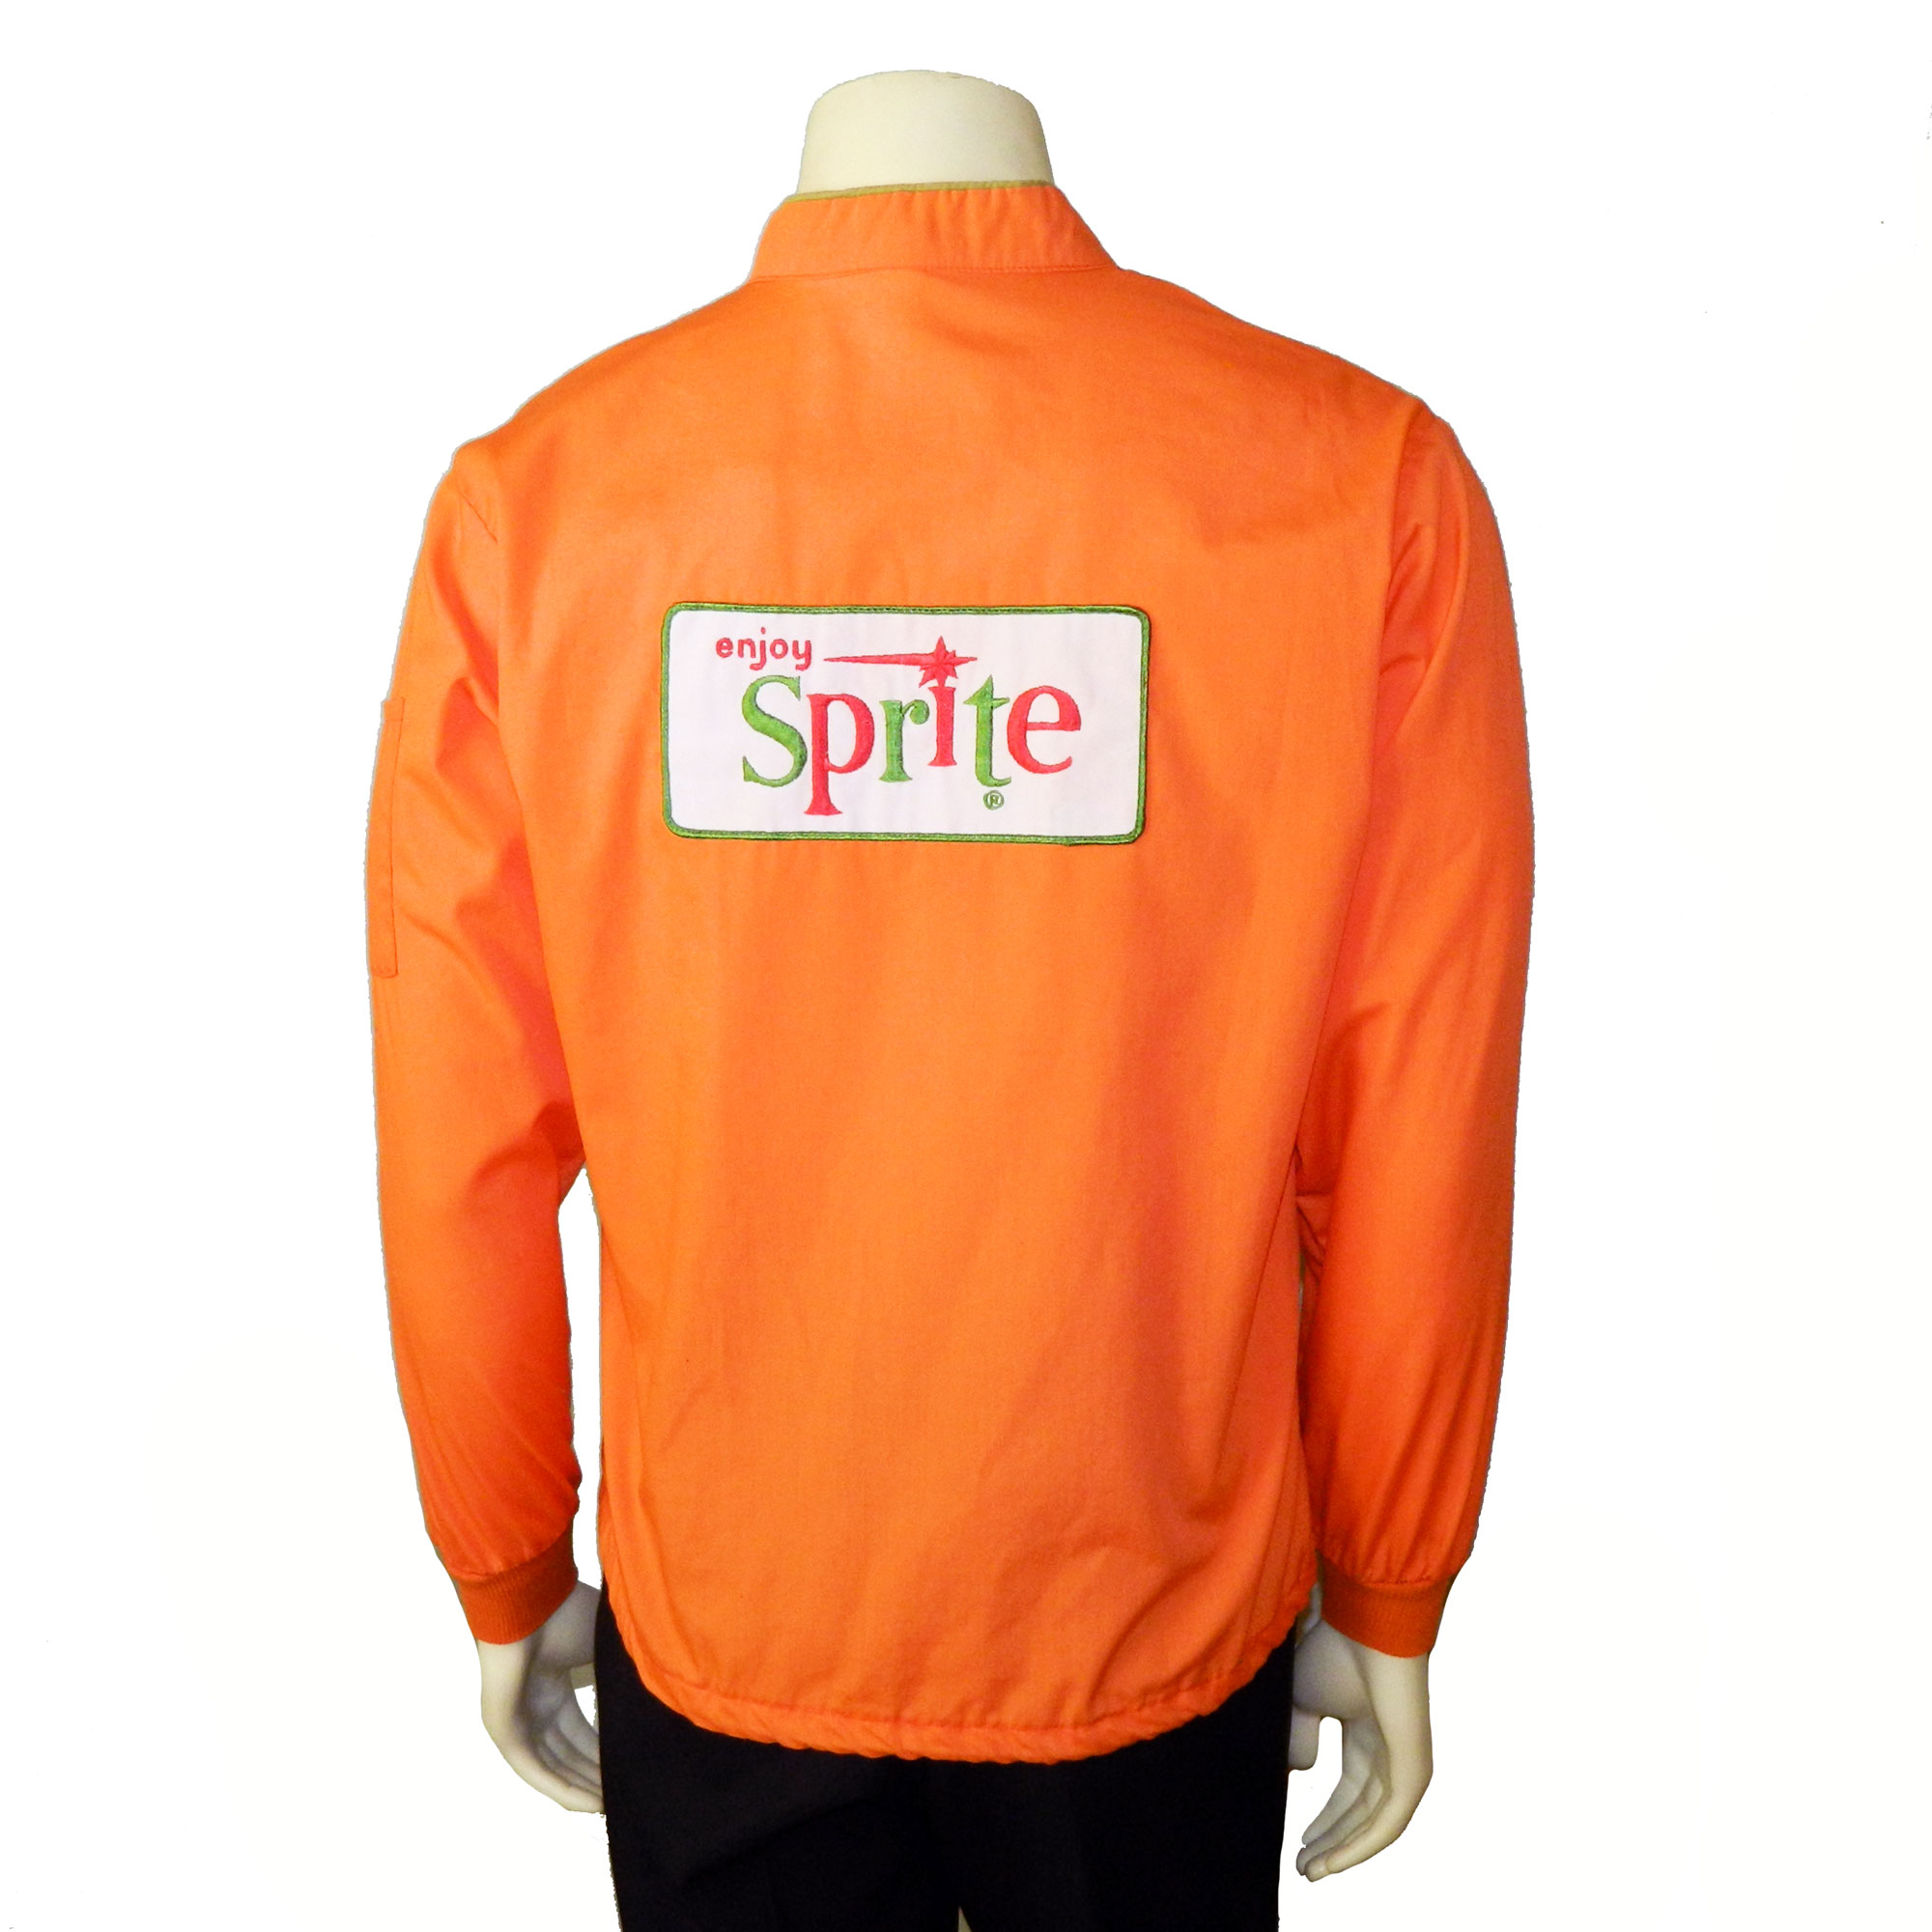 1960s Sprite racing jacket